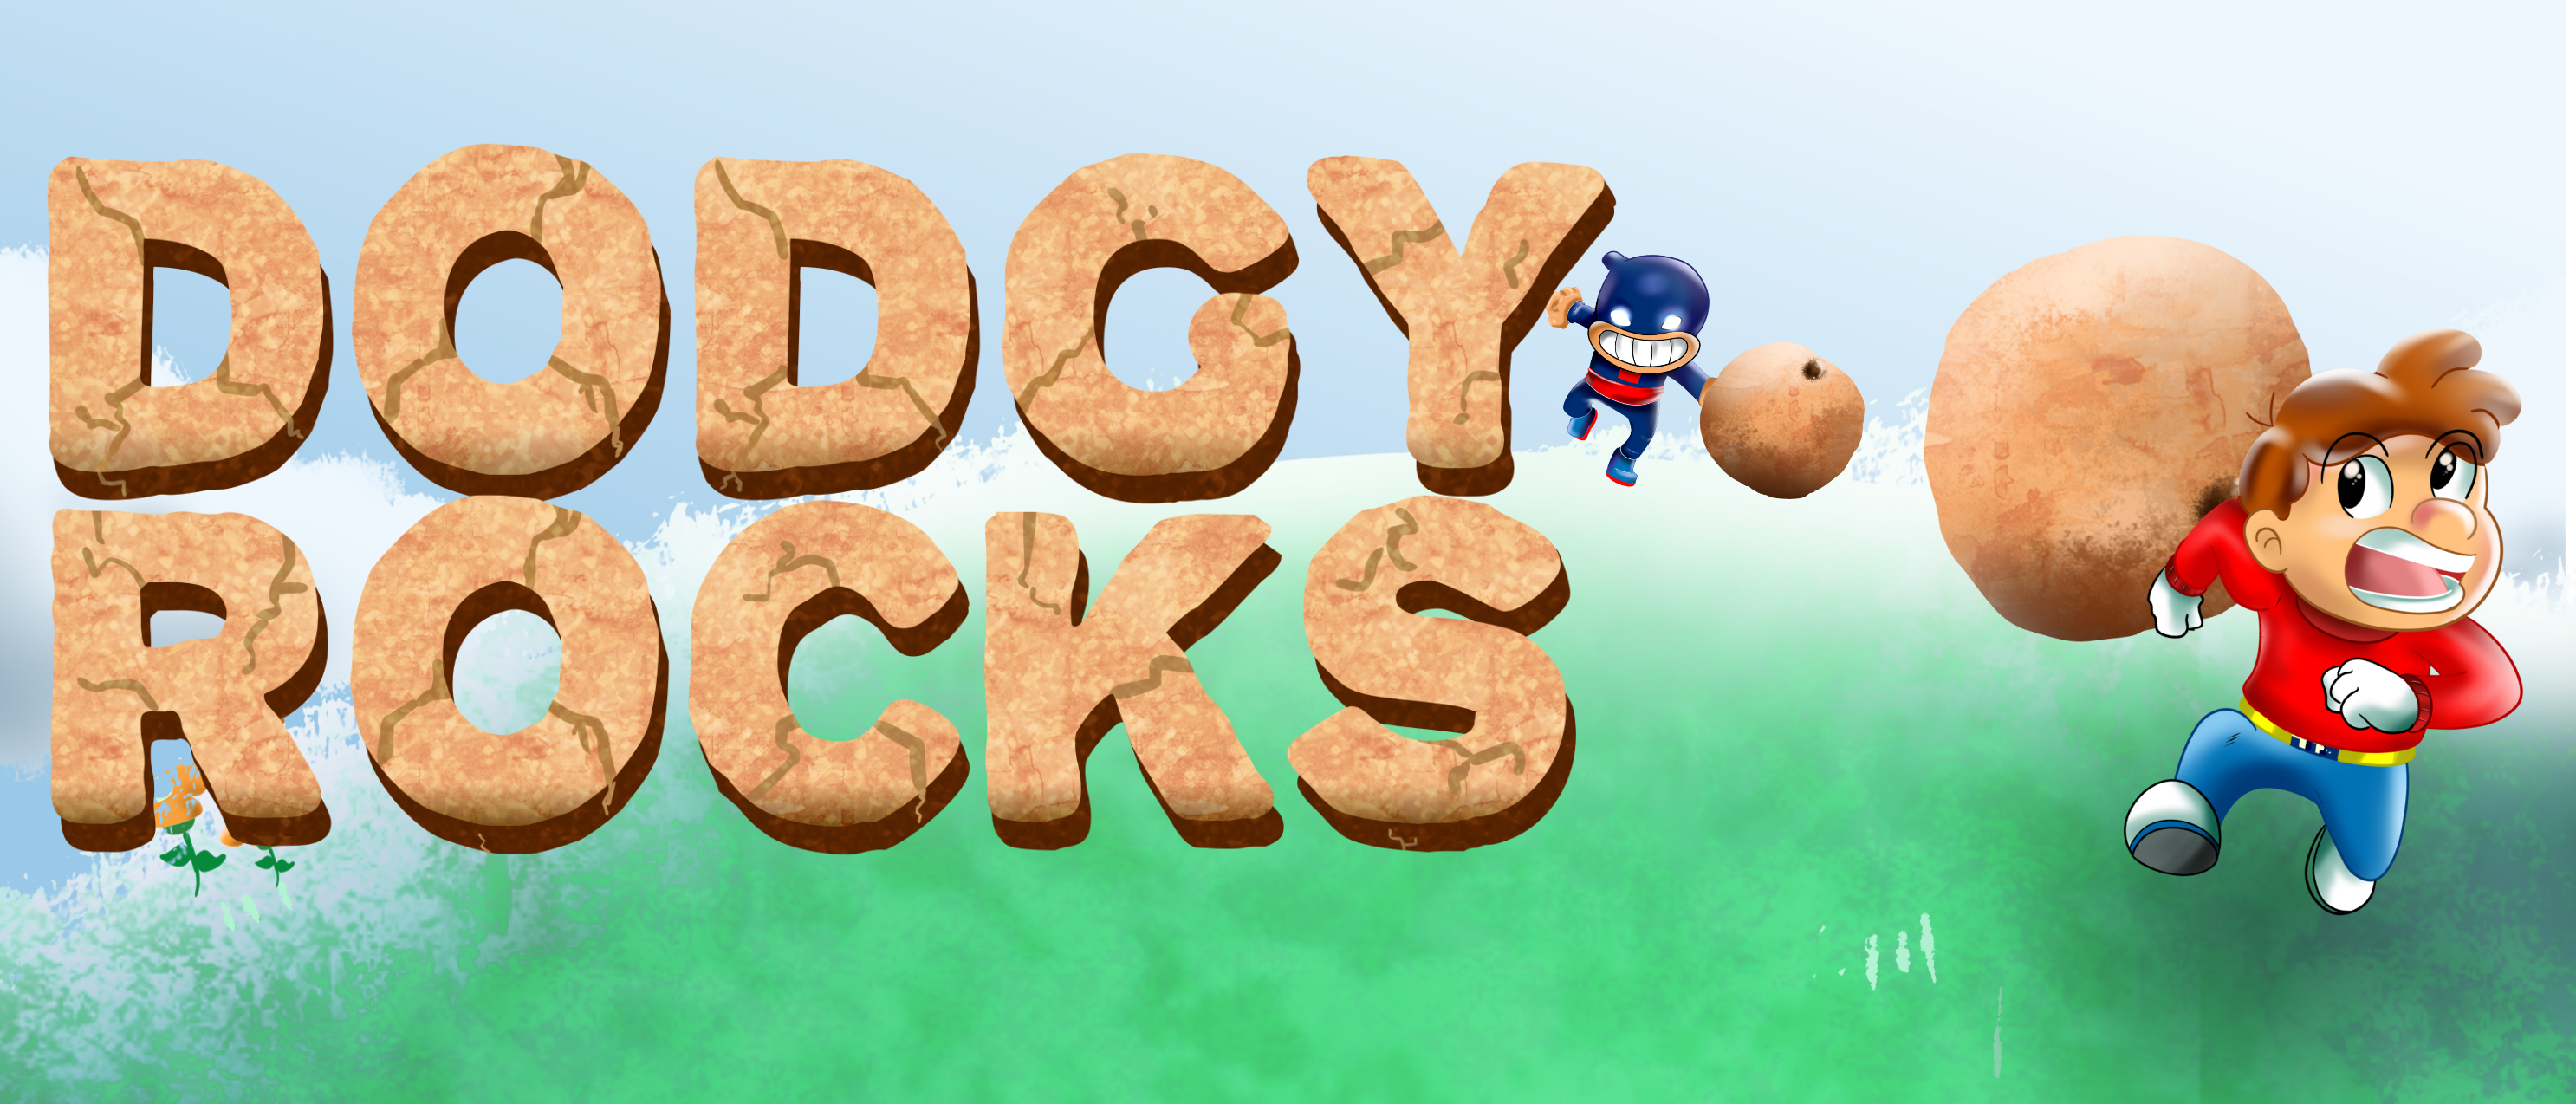 dodgyrocks-banner-2.png